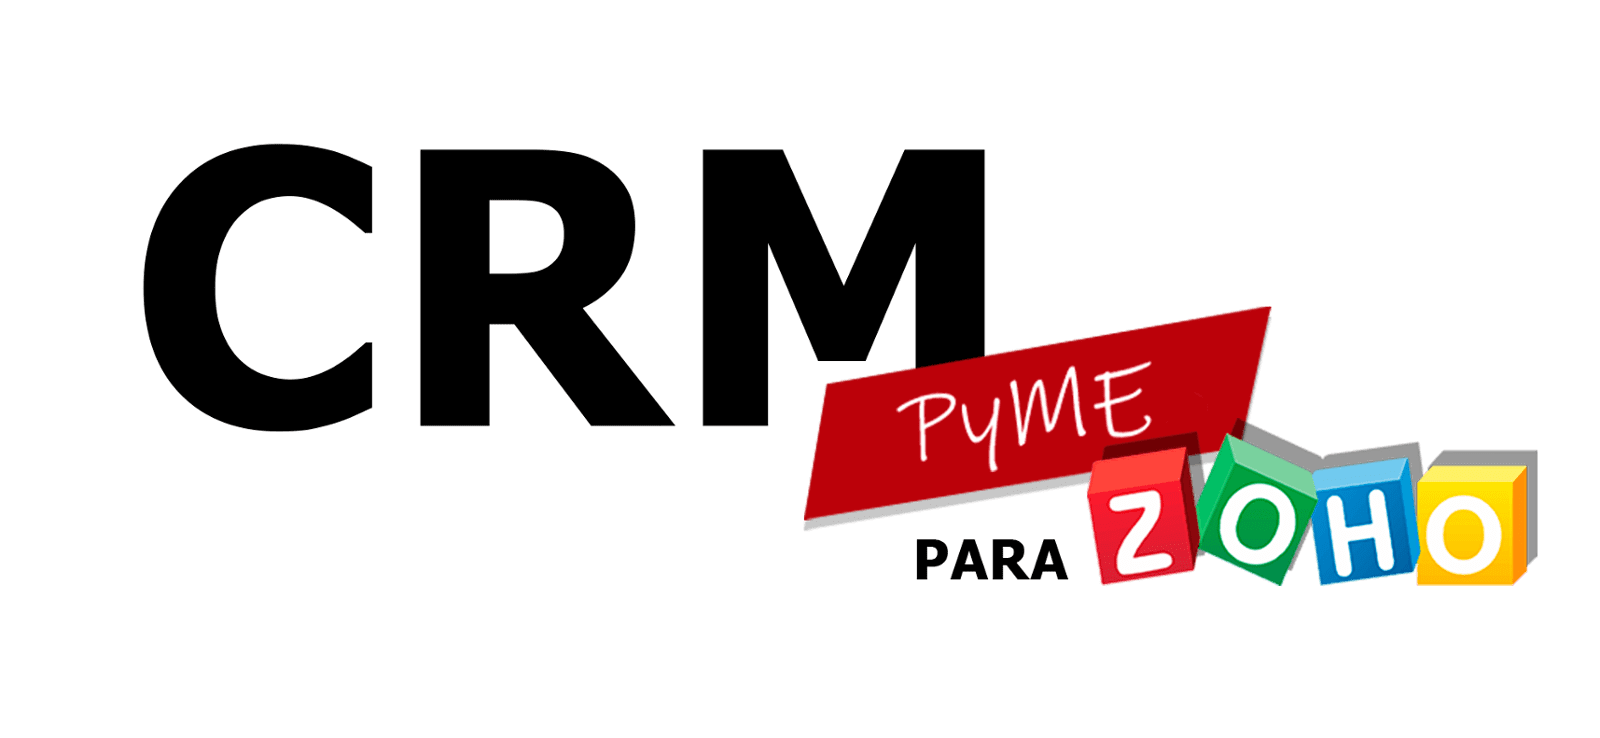 CRM PyME para Zoho